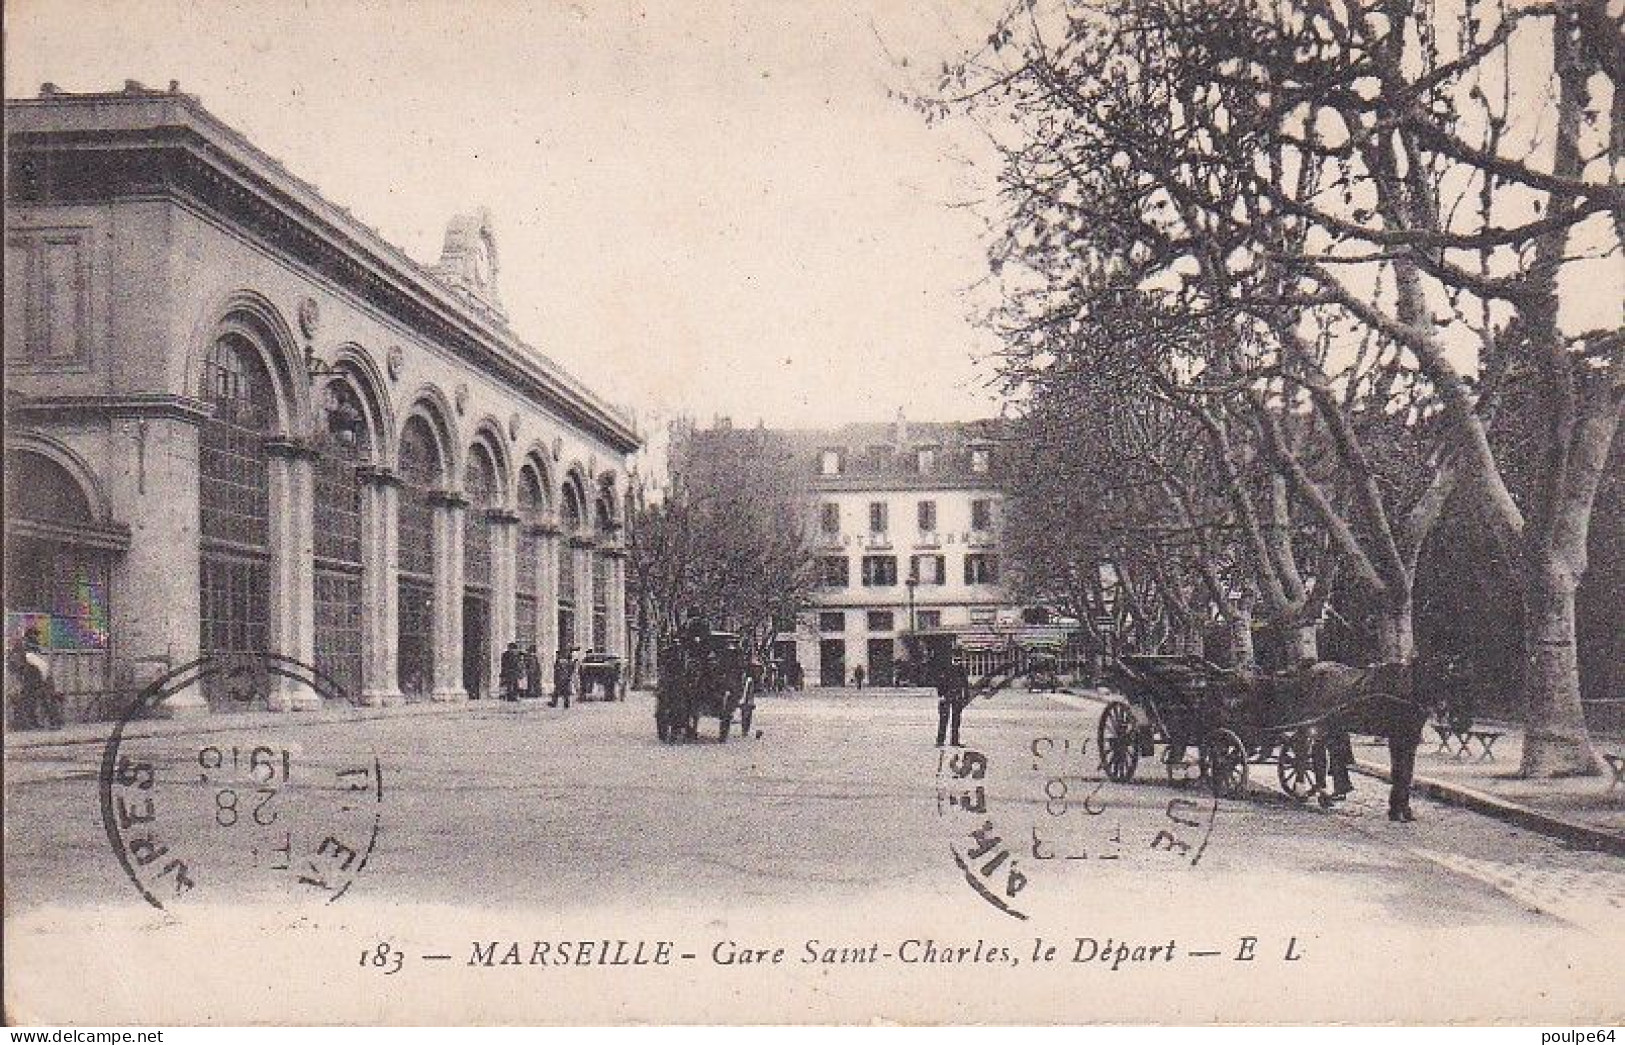 La Gare : Vue Extérieure - Estación, Belle De Mai, Plombières